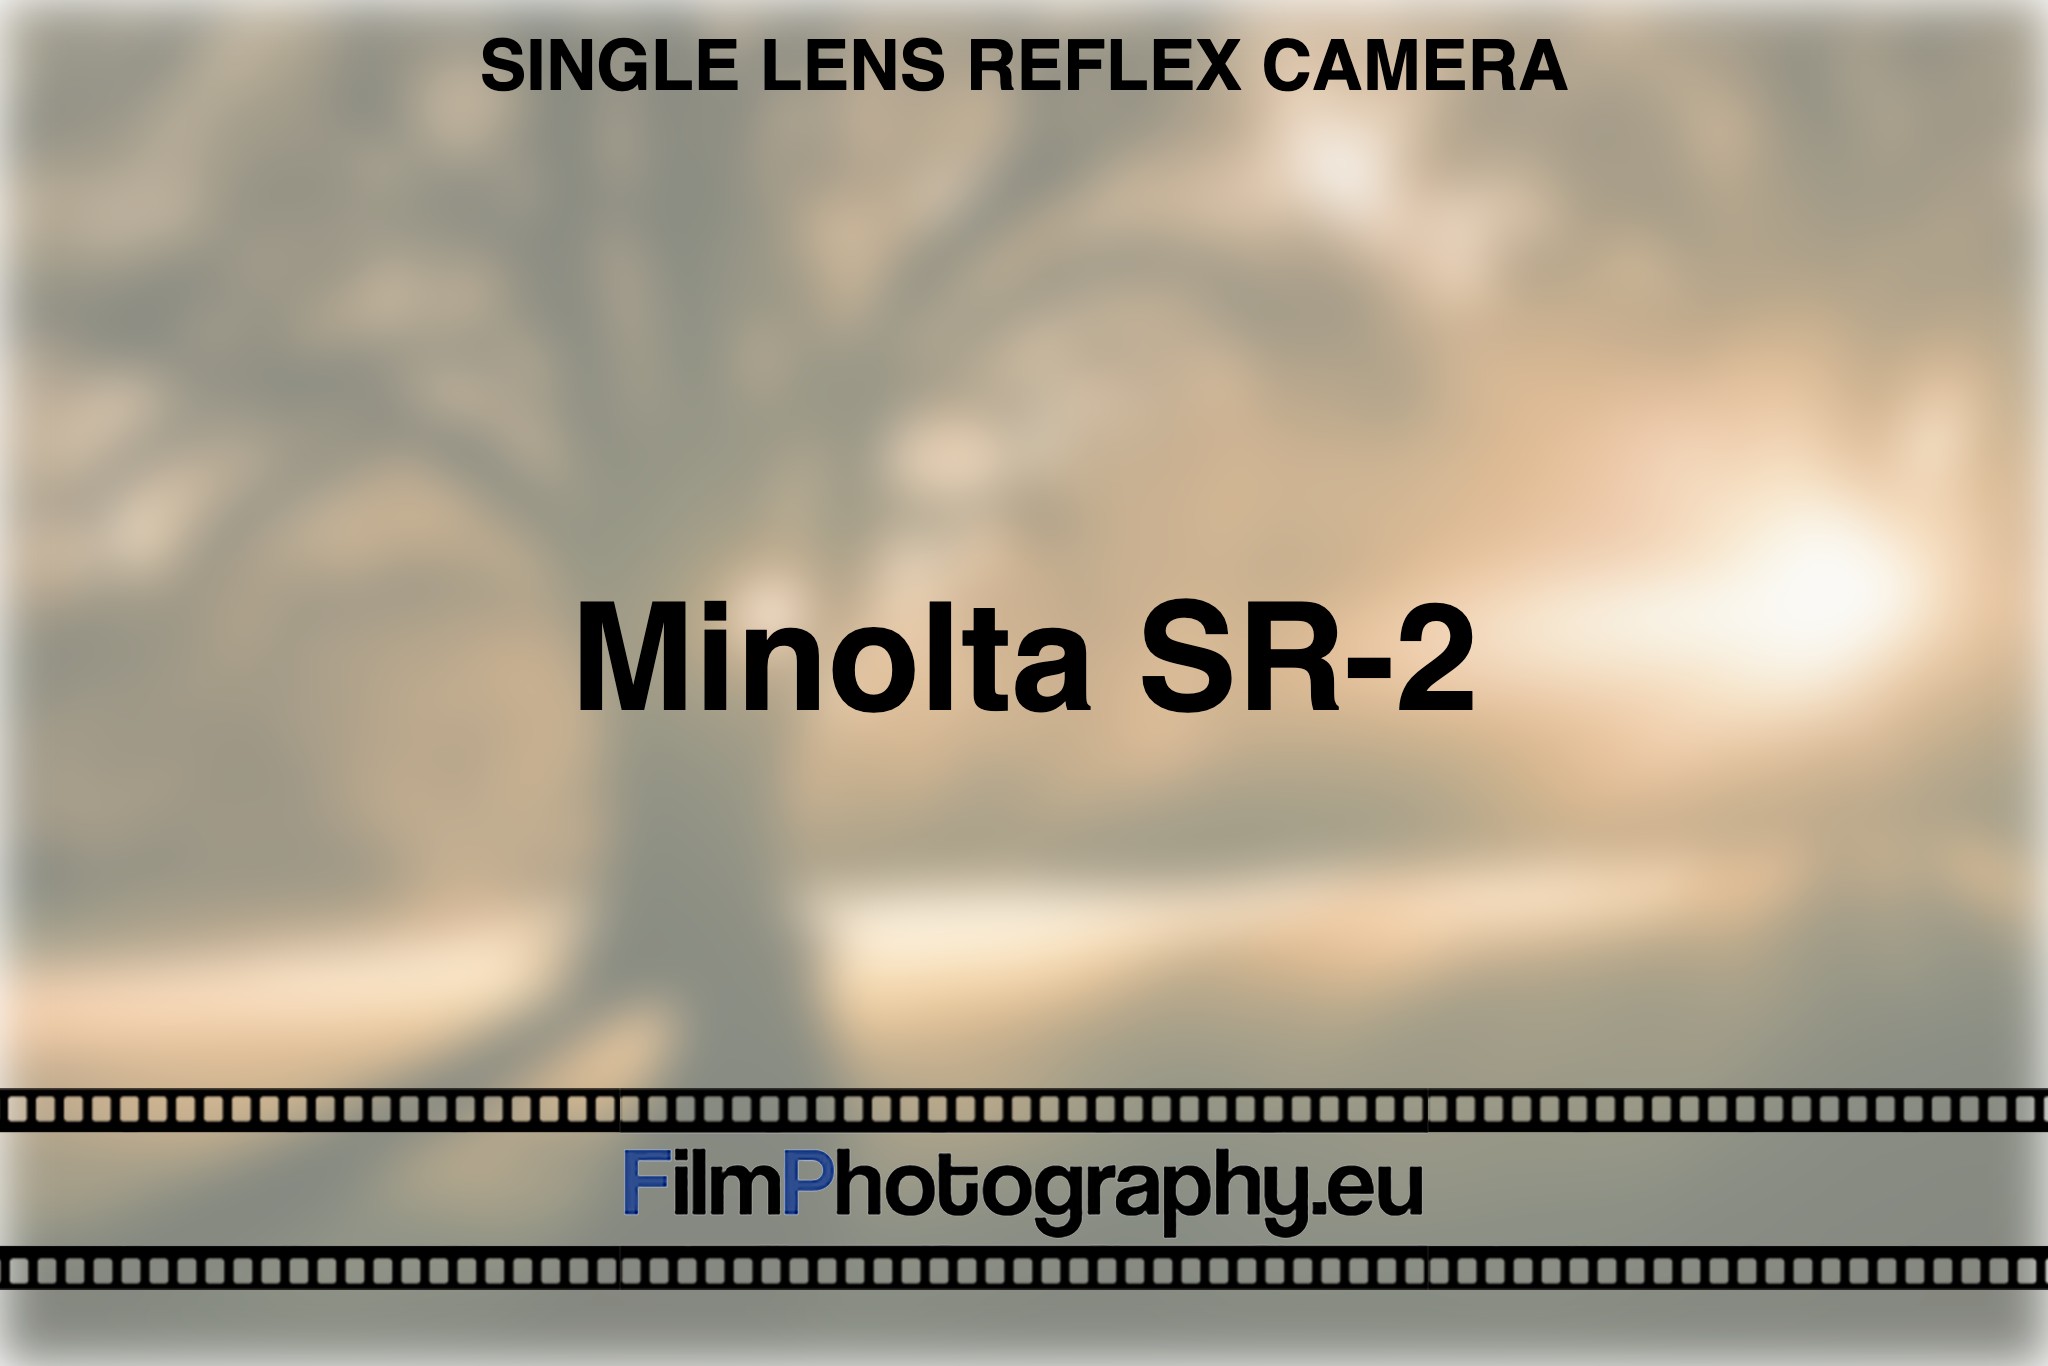 minolta-sr-2-single-lens-reflex-camera-bnv